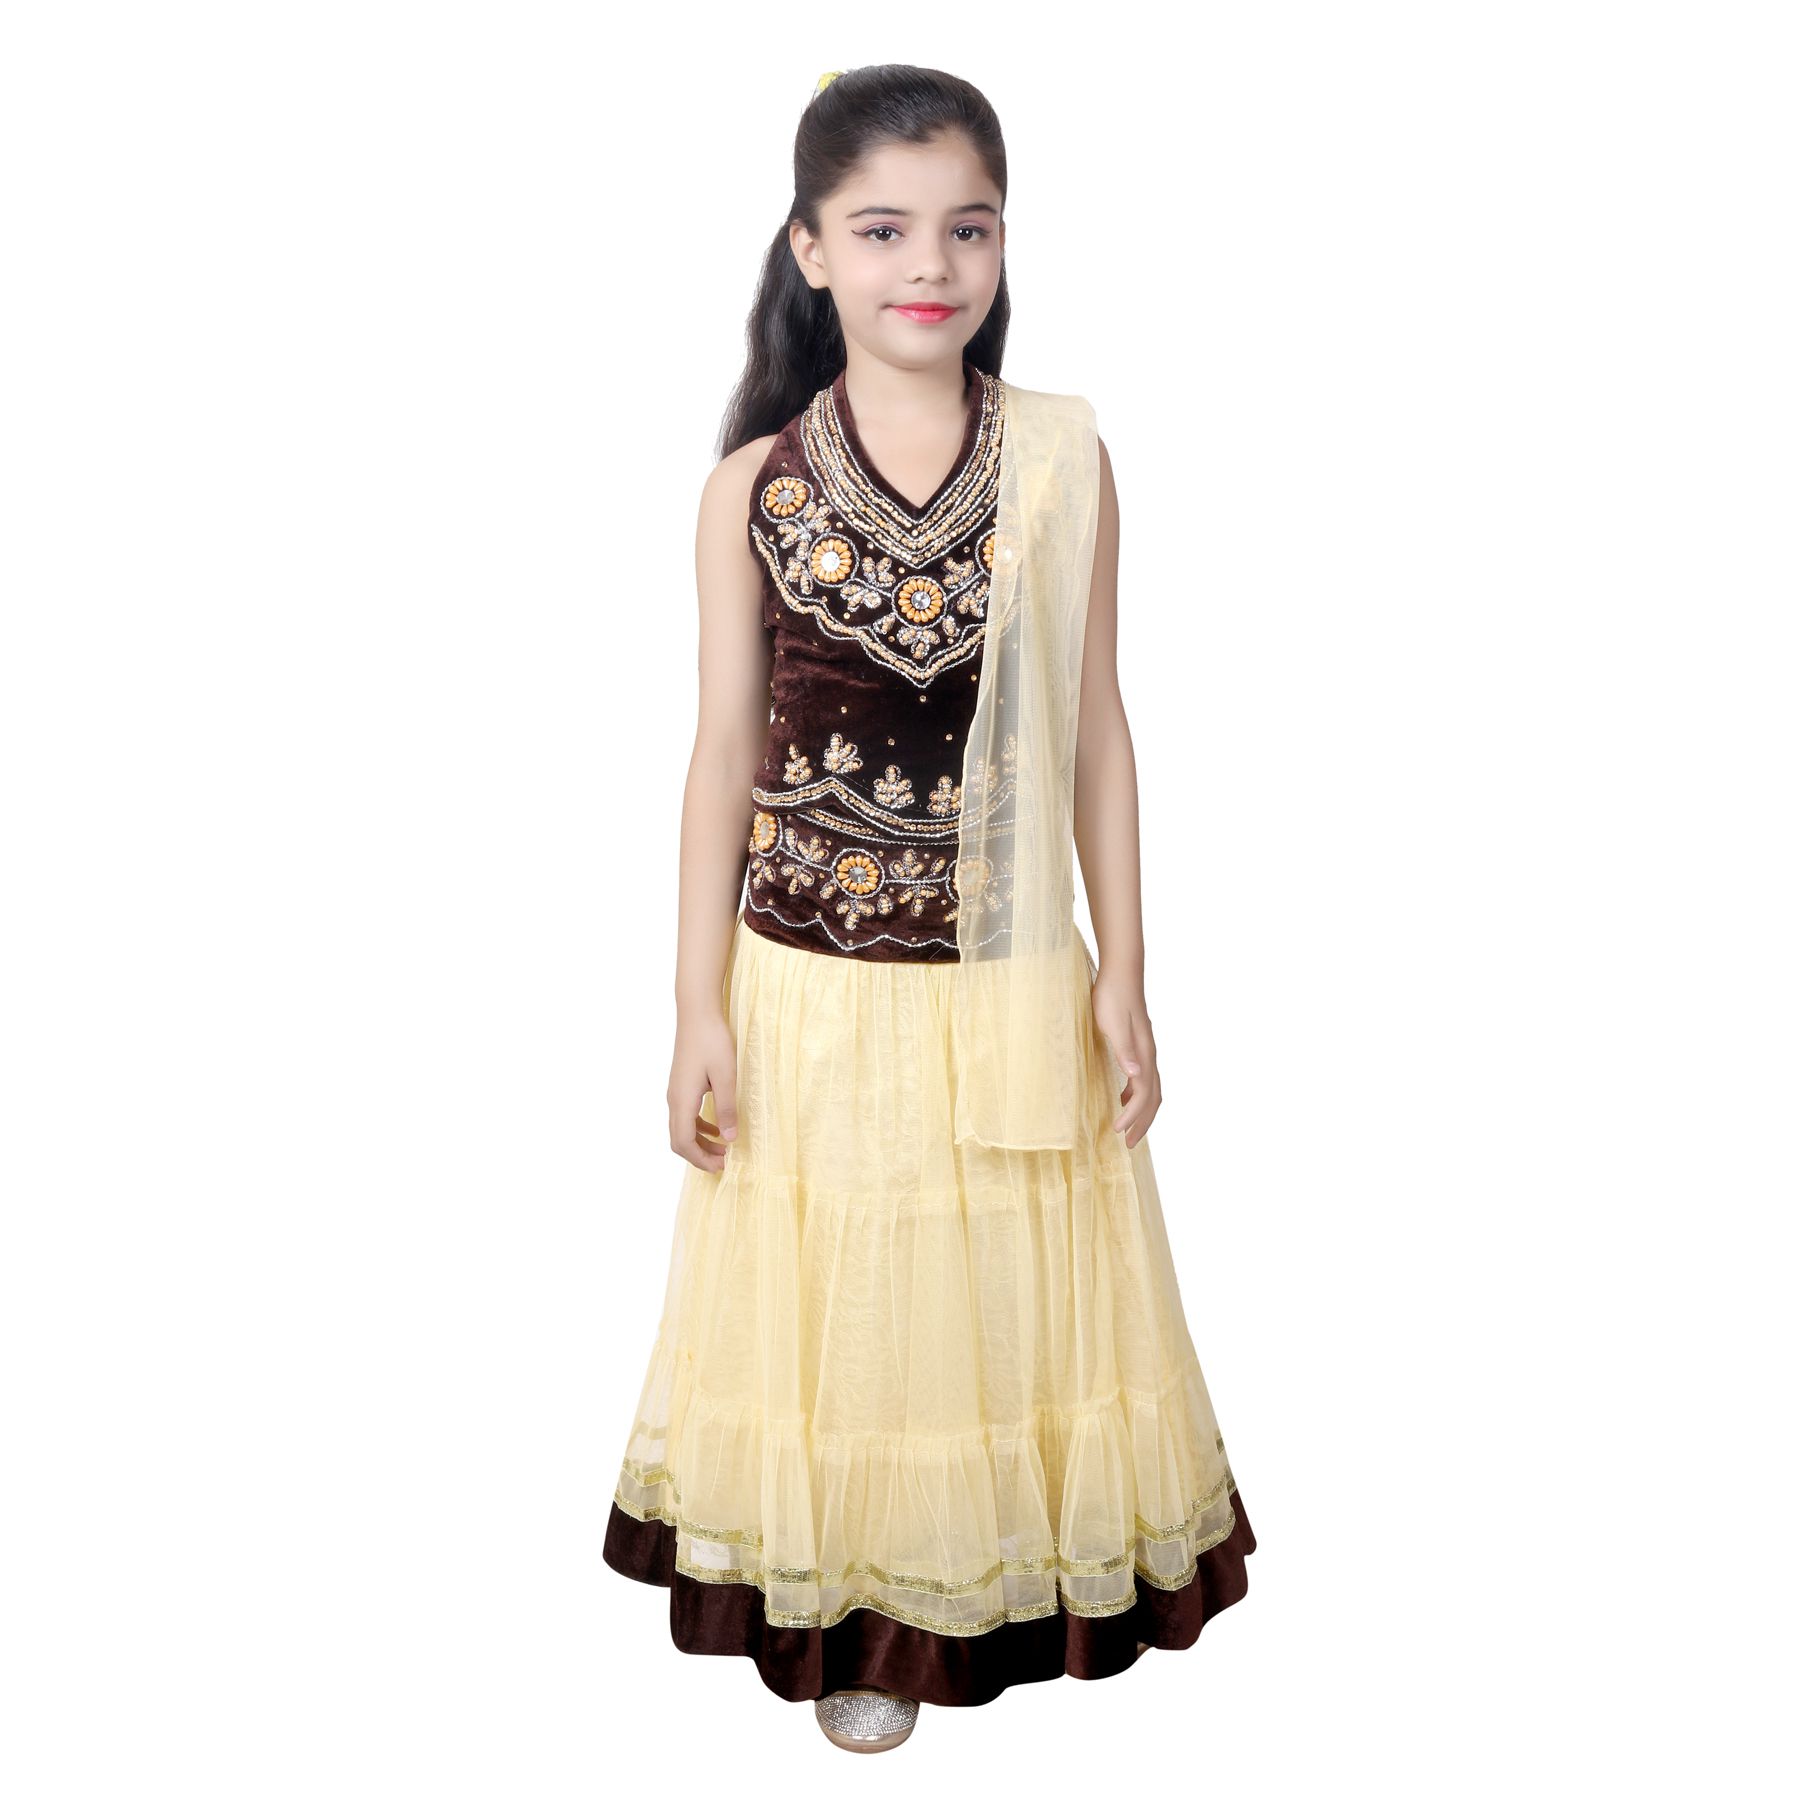 lancha dress for girl image